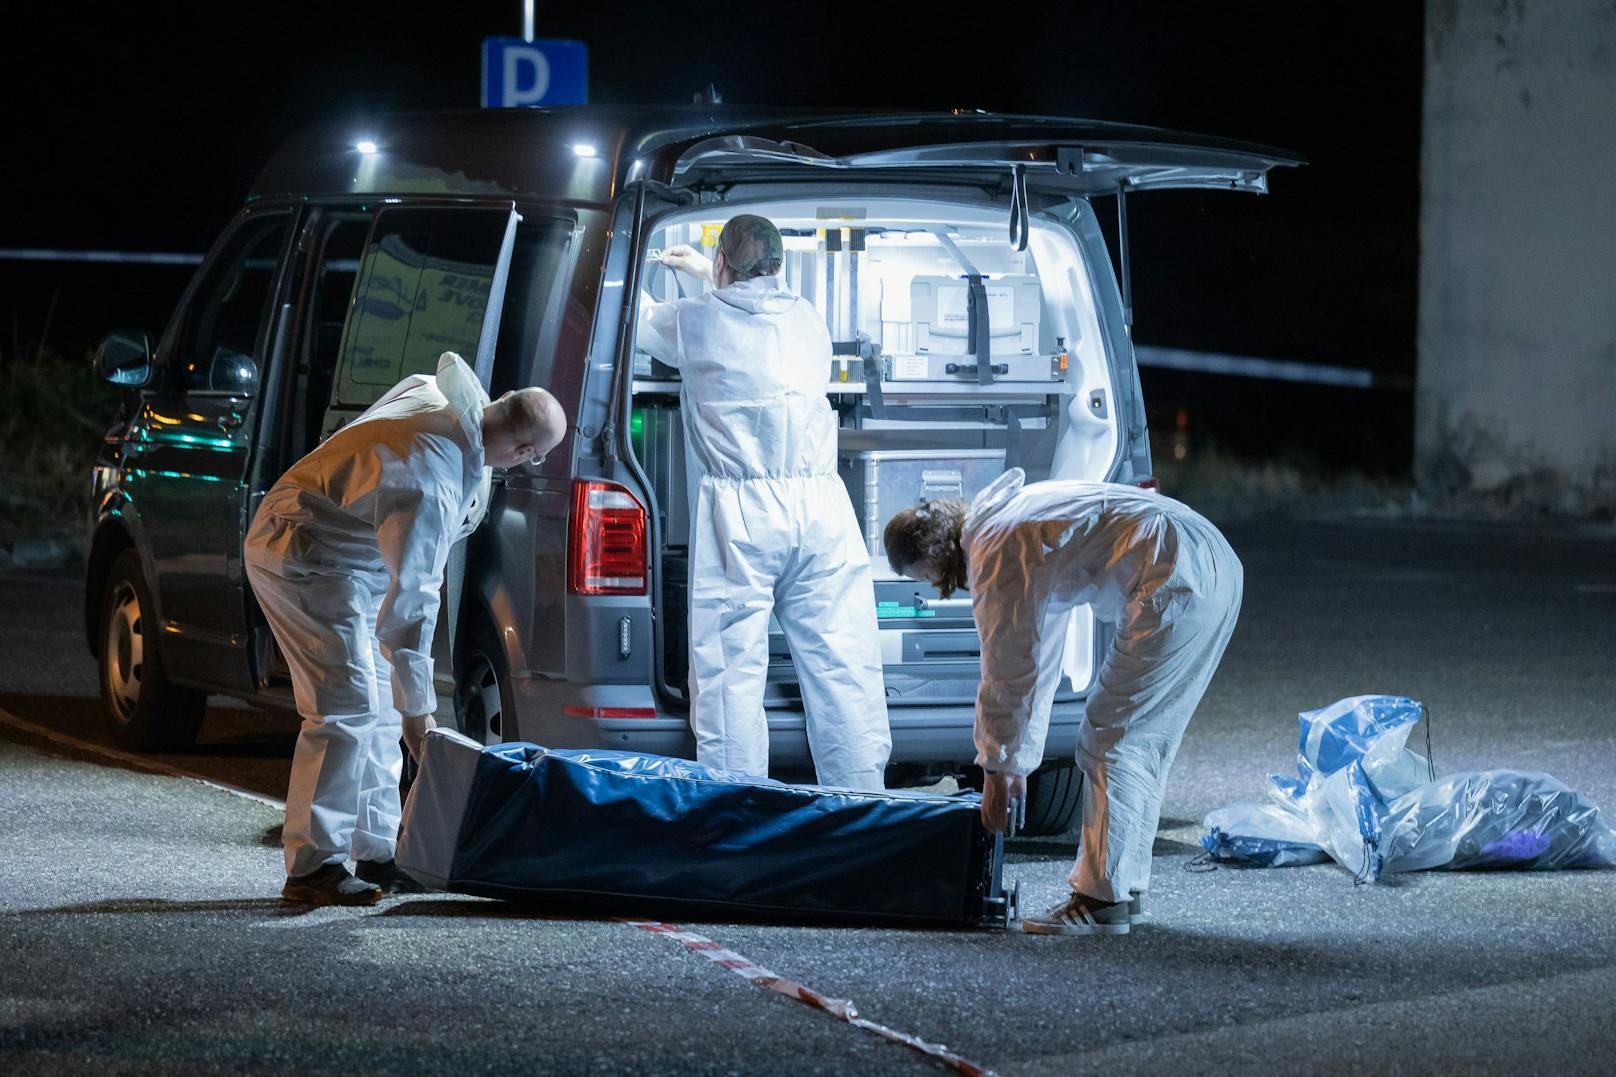 Im Gemeindegebiet von Ansfelden im Bezirk Linz-Land fand die Polizei bei einer routinemäßigen Verkehrskontrolle im Kofferraum eines Wagens die Leiche einer Frau.&nbsp;